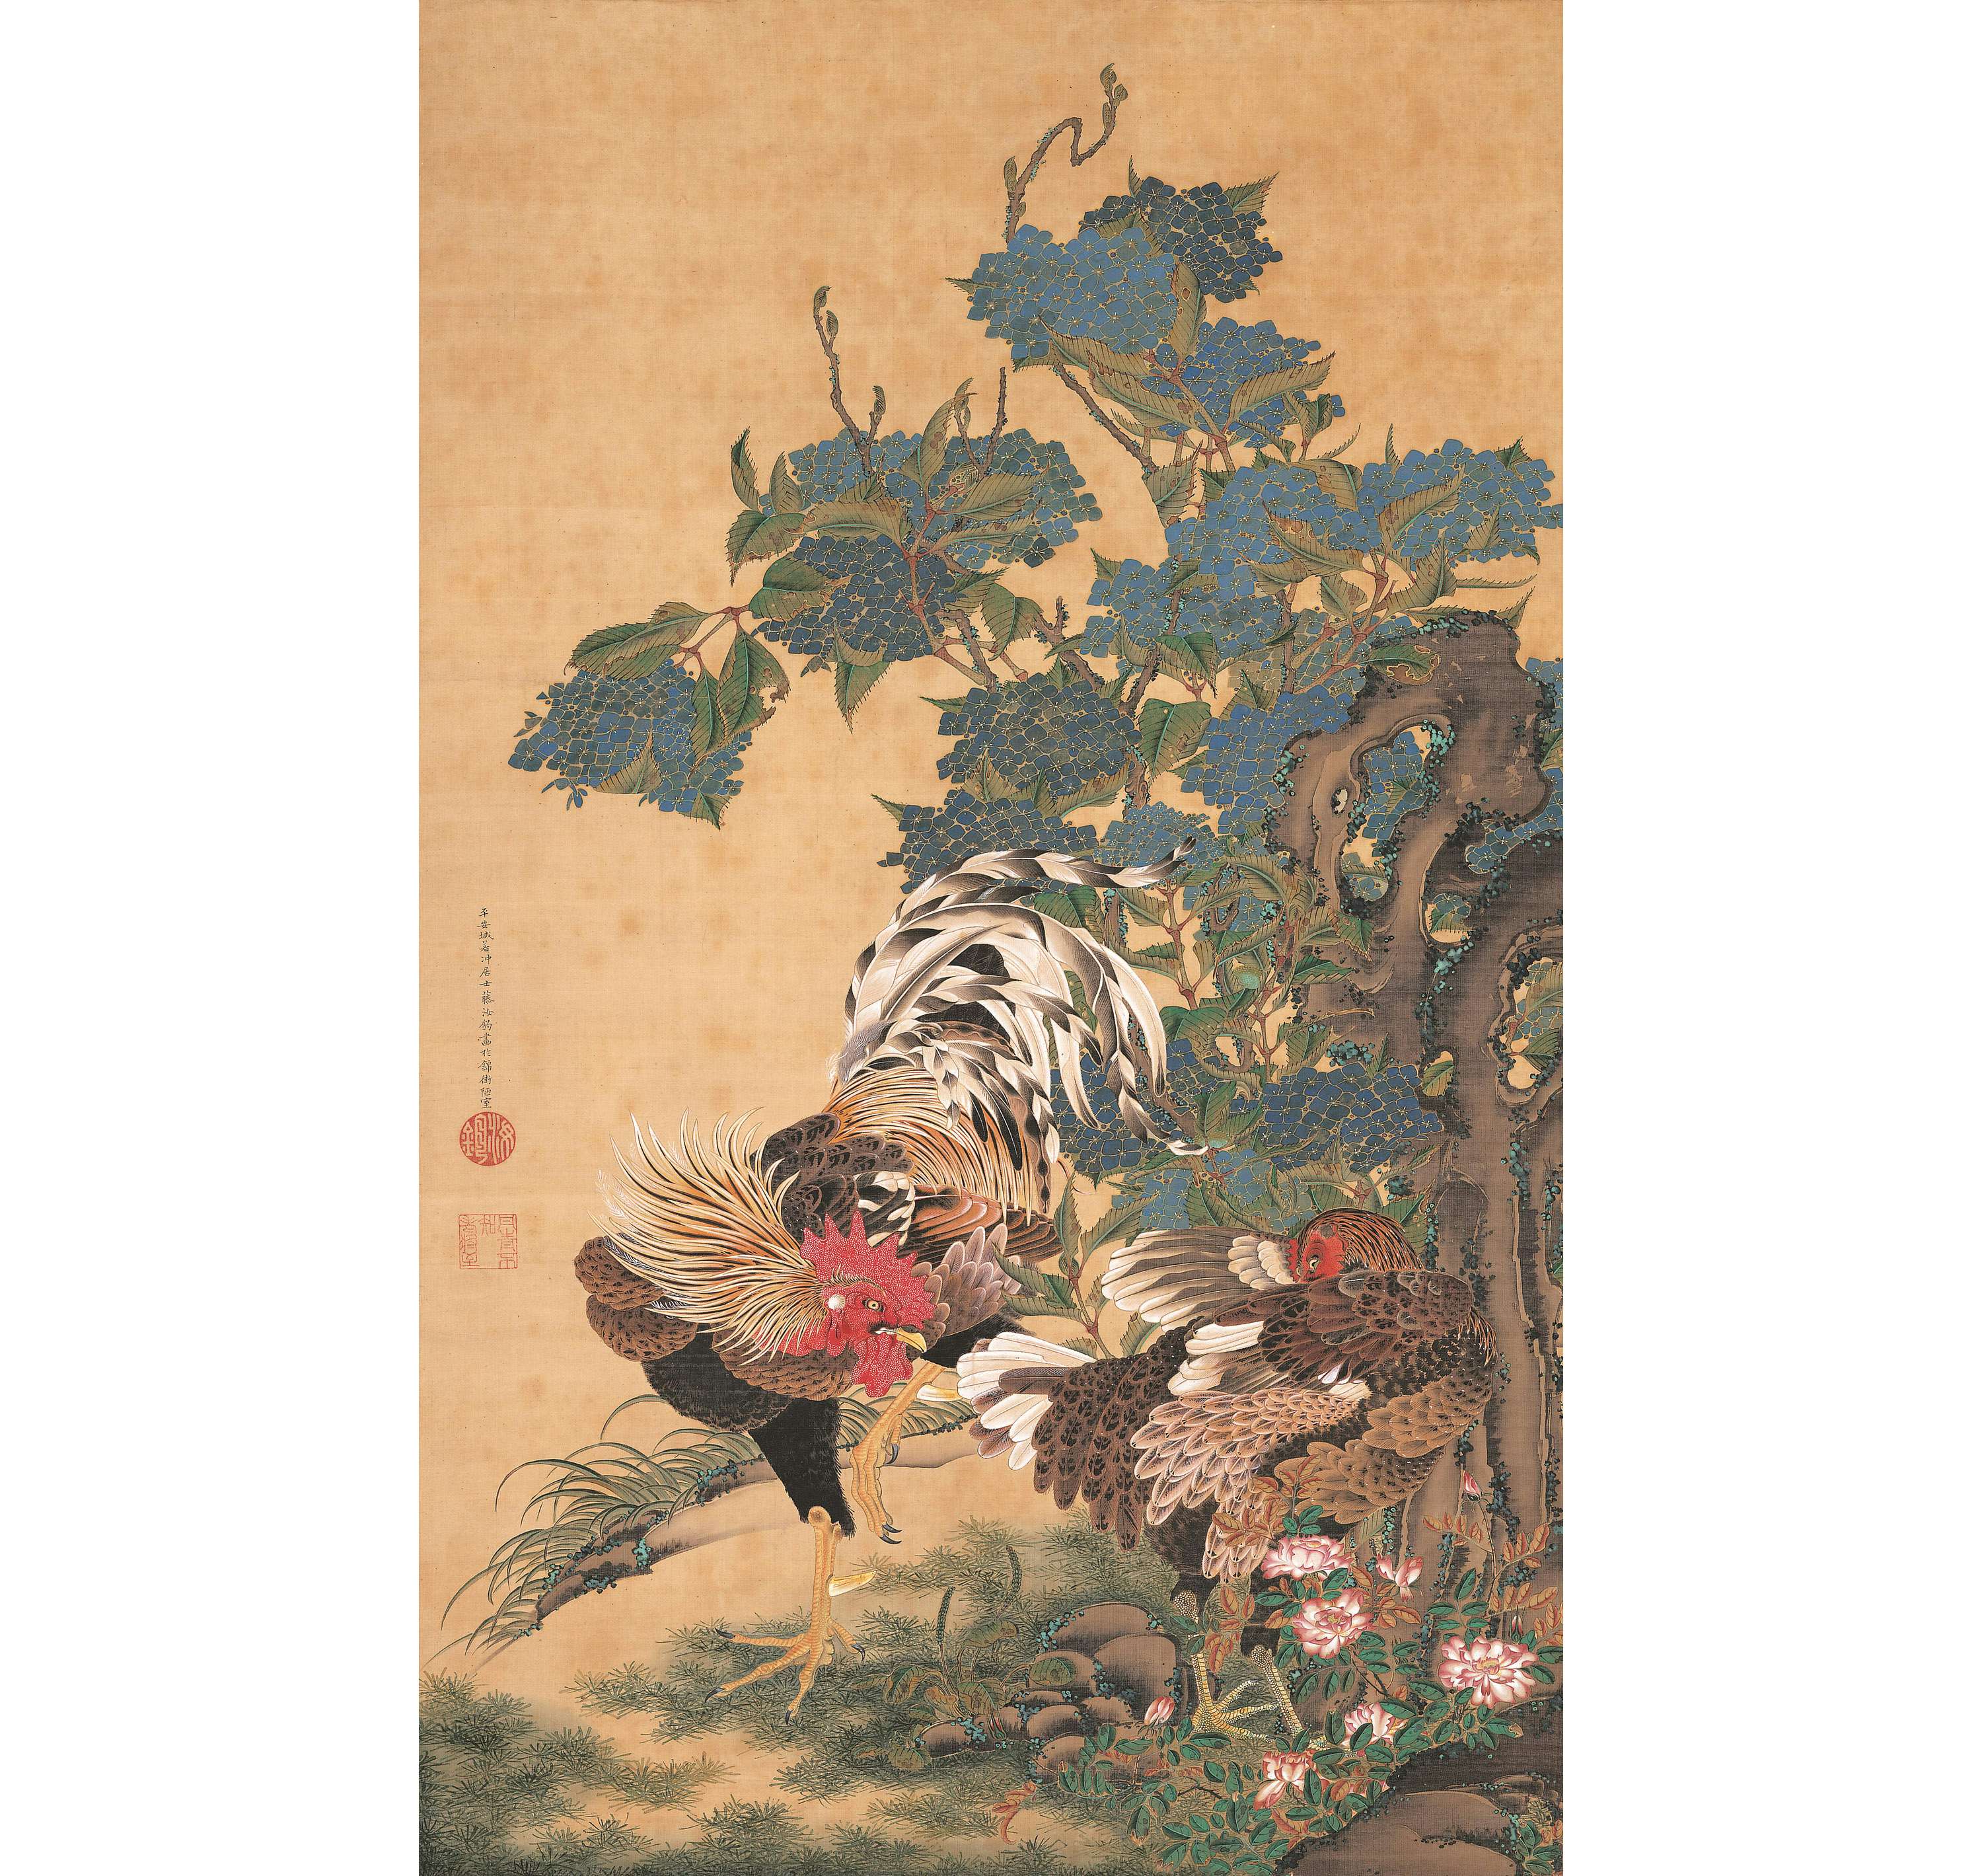 【模写】【伝来】sh8496〈曽我蕭白〉寿老人童子図 奇想の画家 江戸時代中期